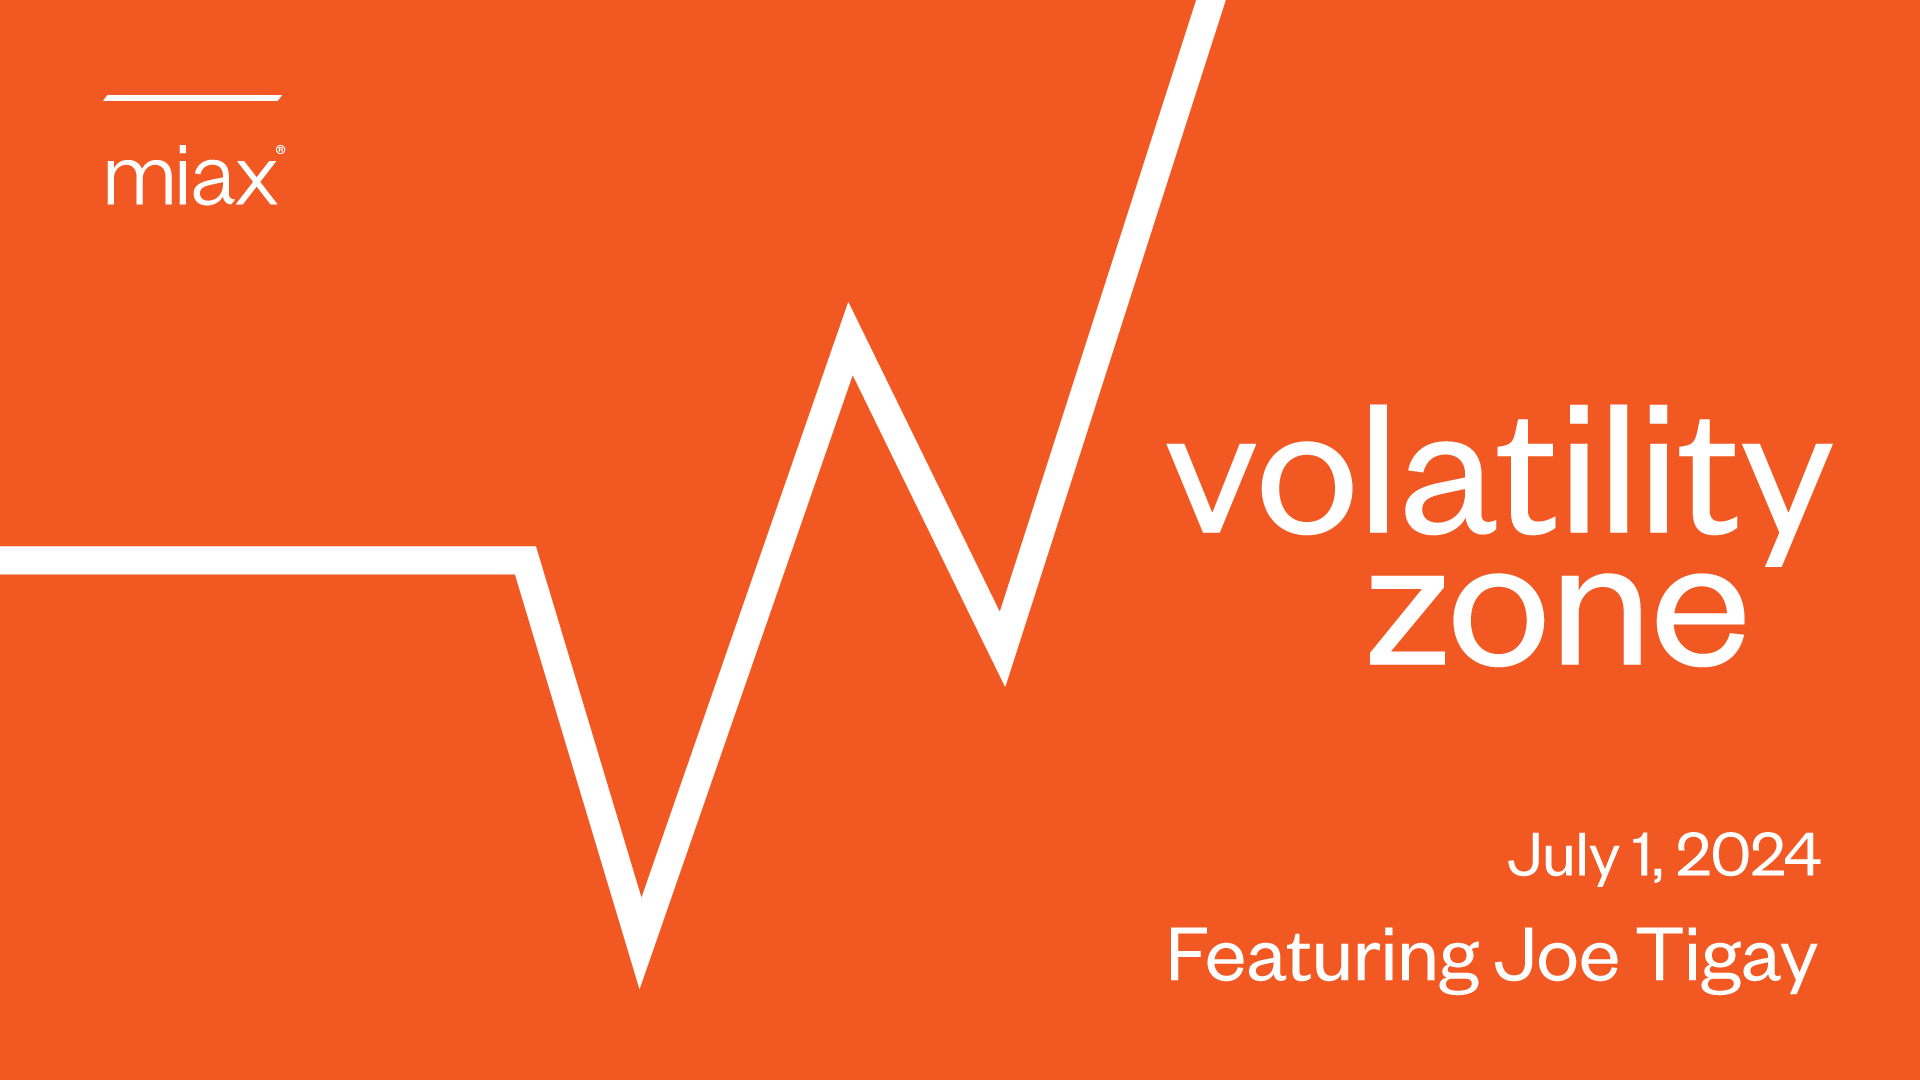 MIAX Volatility Zone July 1, 2024